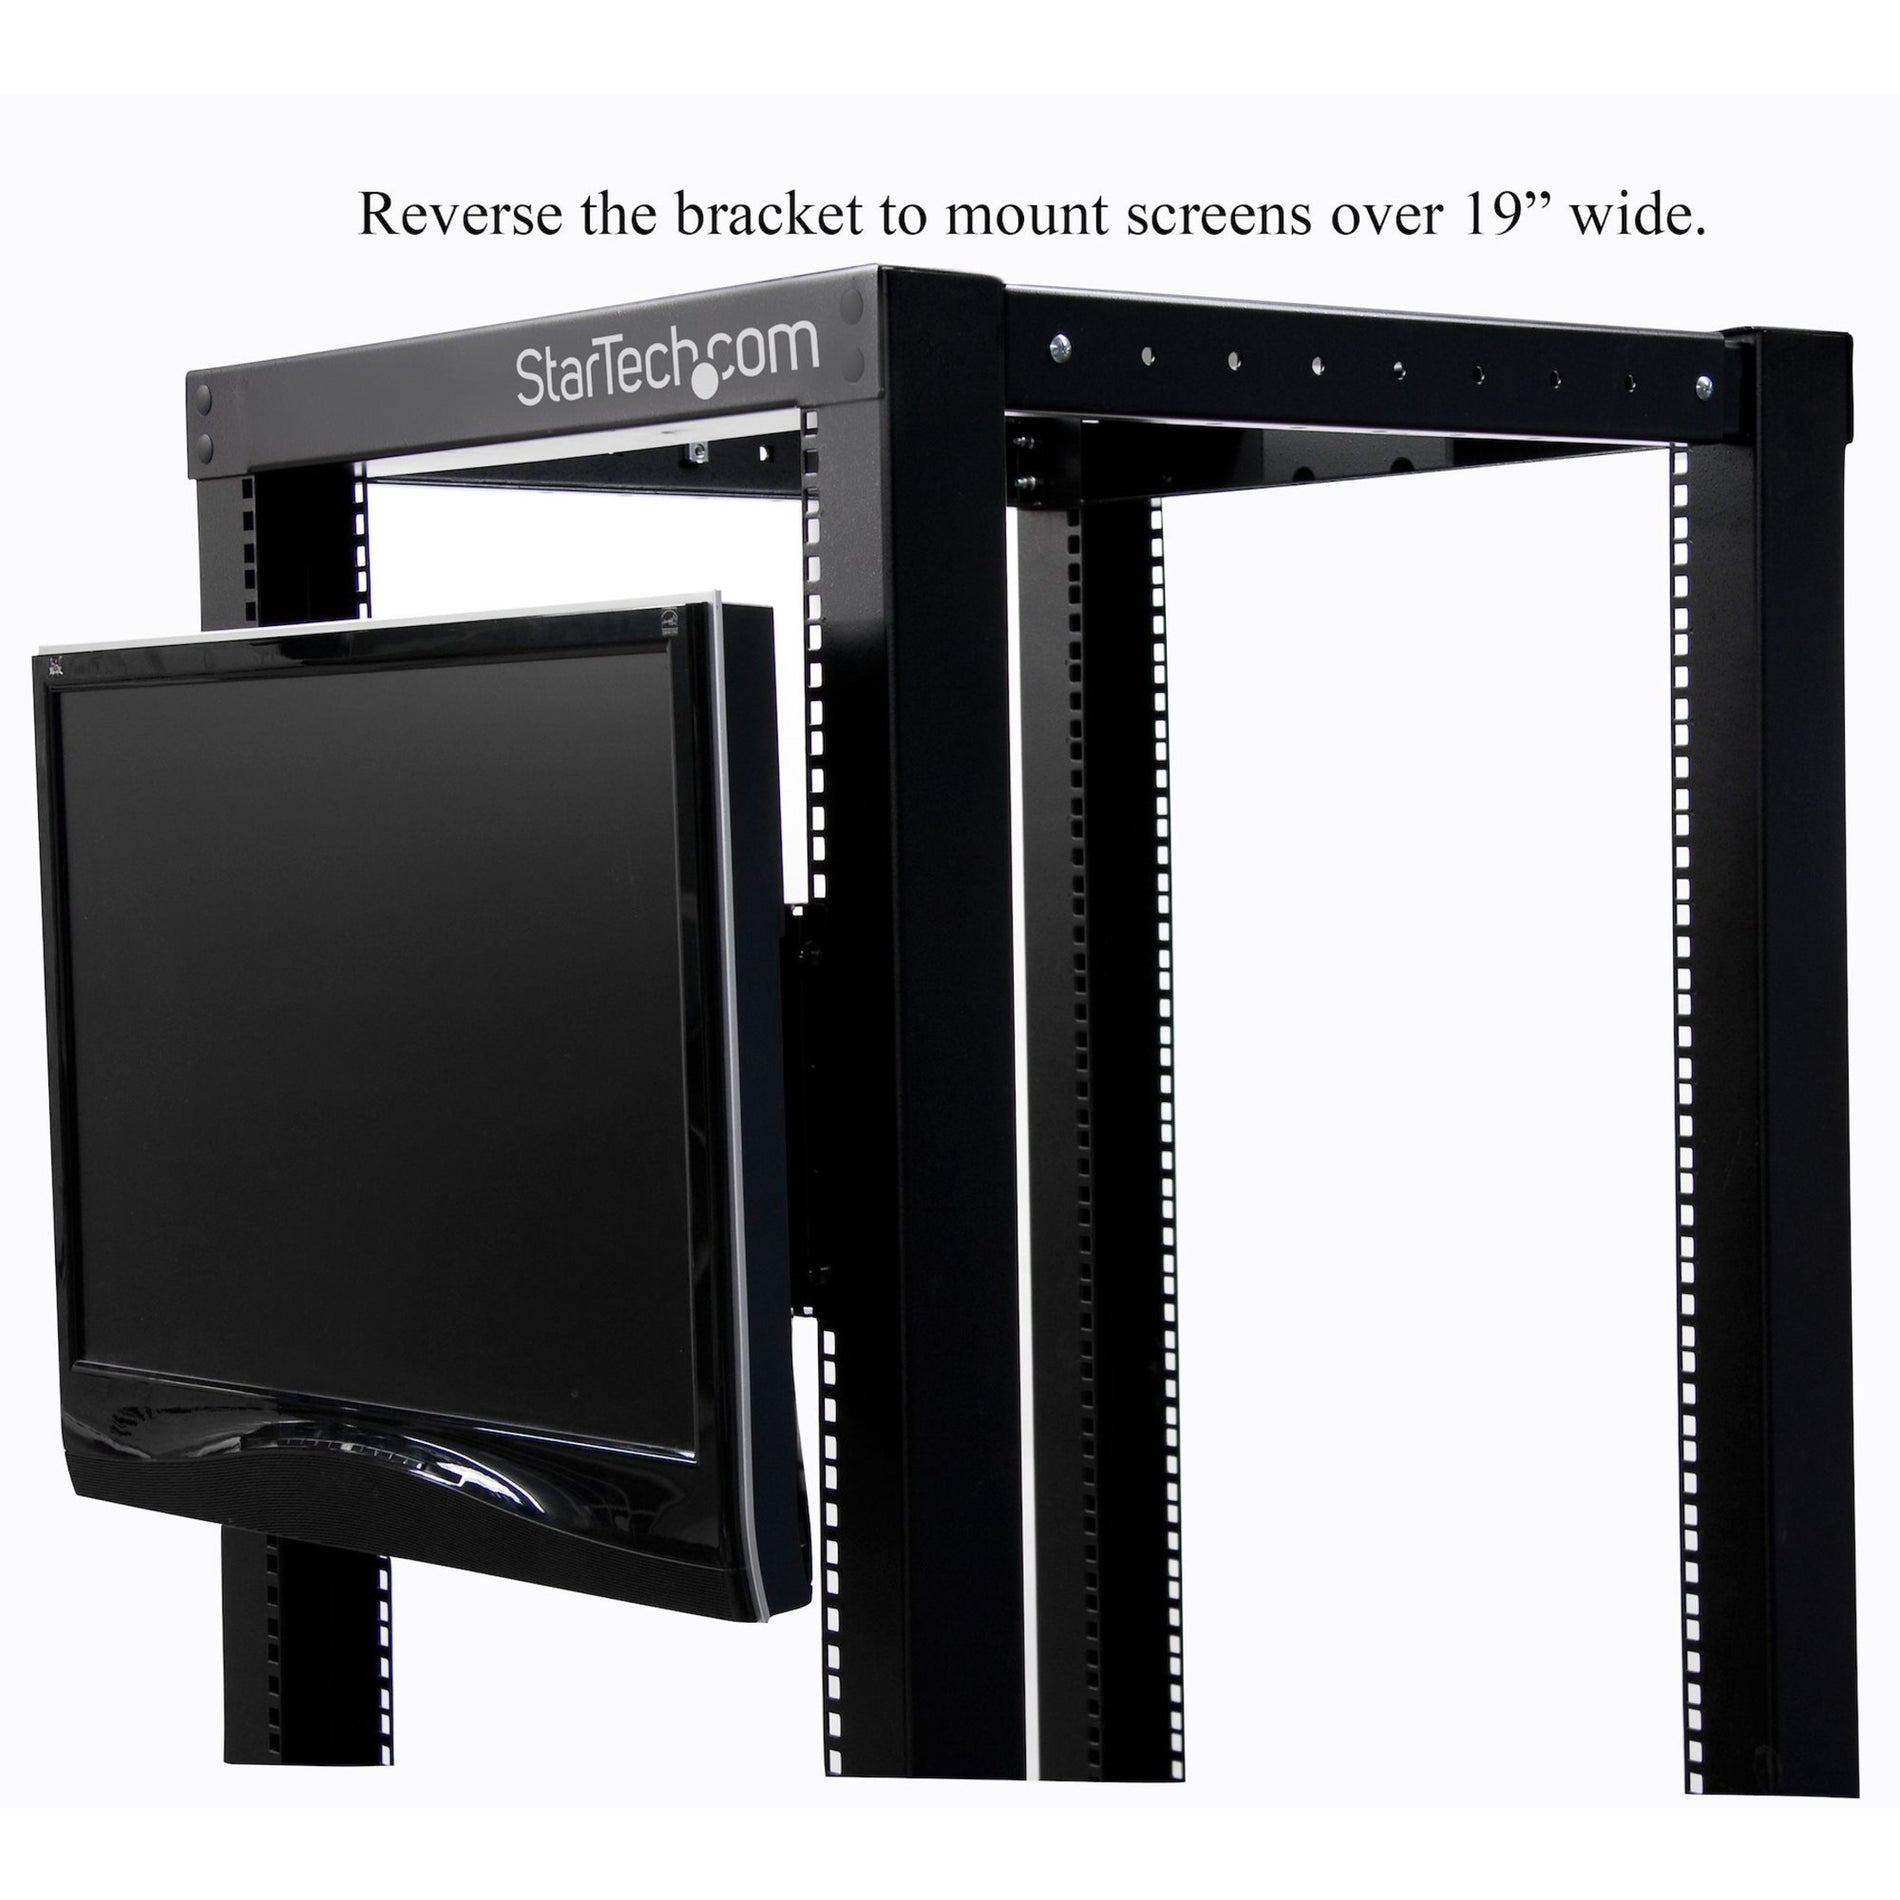 Soporte de montaje universal para monitor LCD VESA StarTech.com RKLCDBK para rack o gabinete de 19 pulgadas solución duradera y versátil.